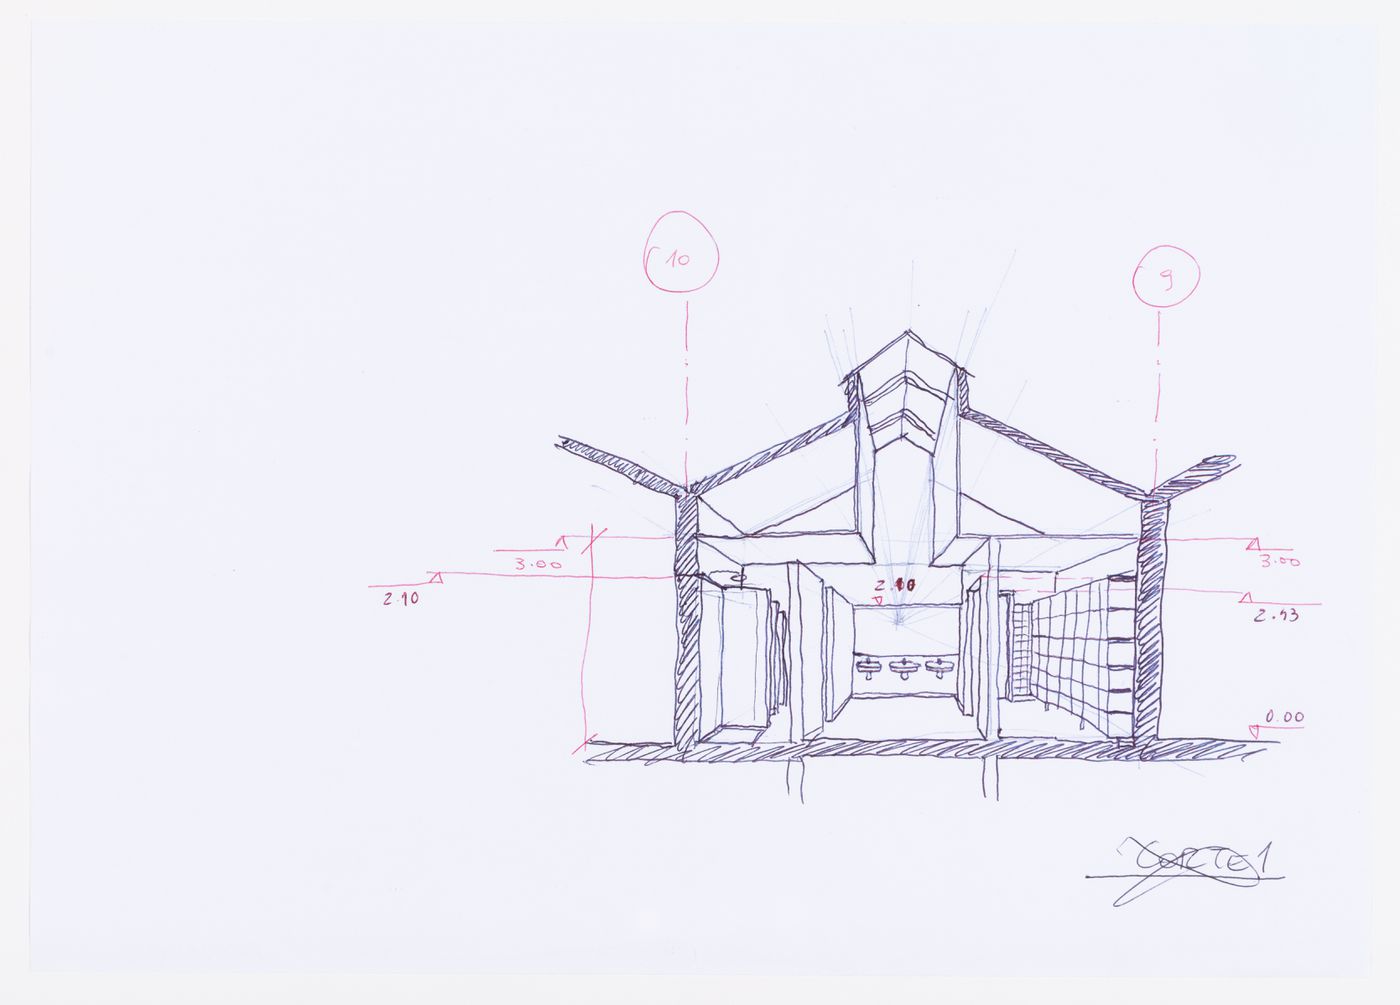 Sketch perspective for Clubhouse de Vidago, Vidago